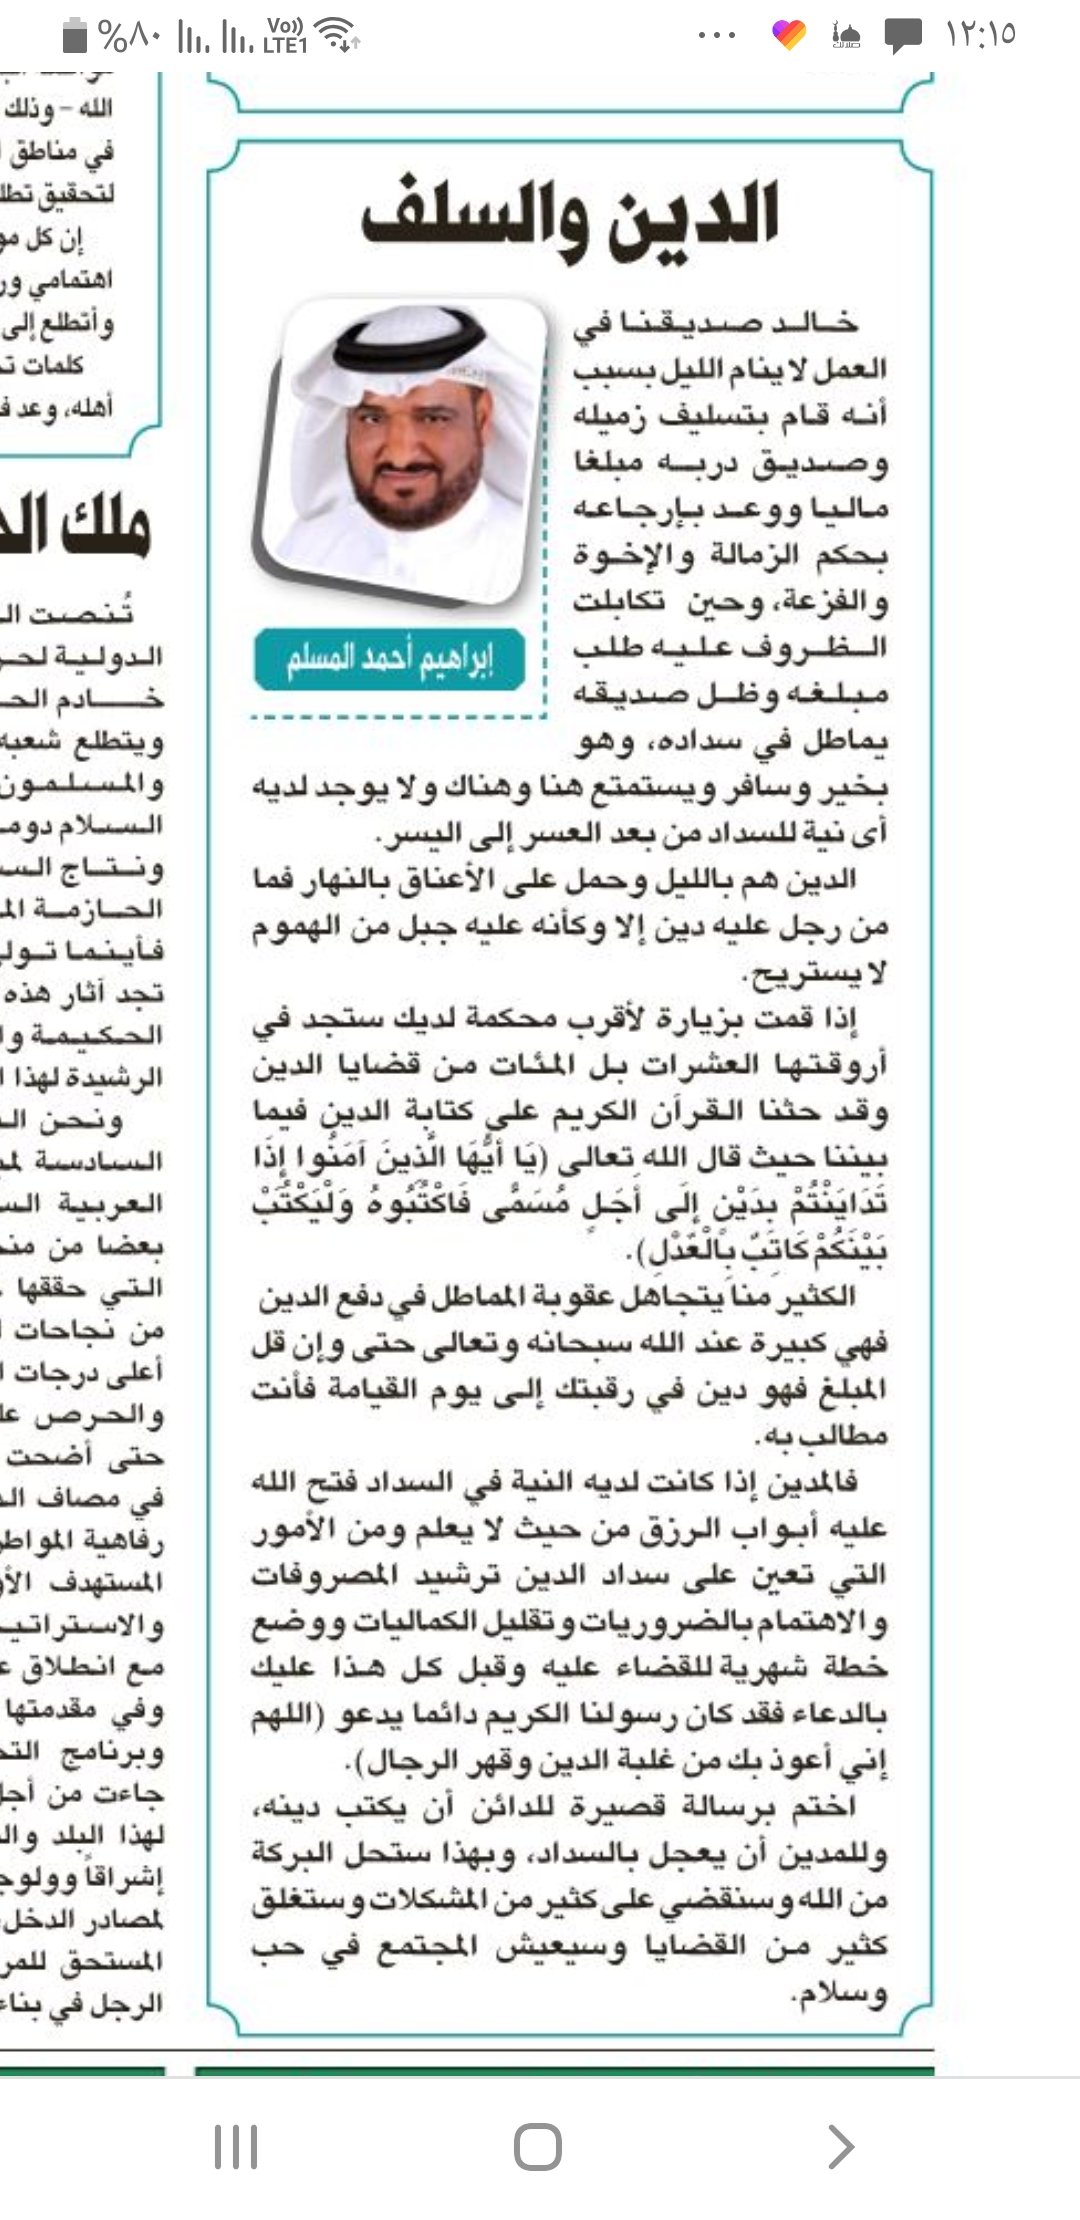 جريدة الرياض اليوم